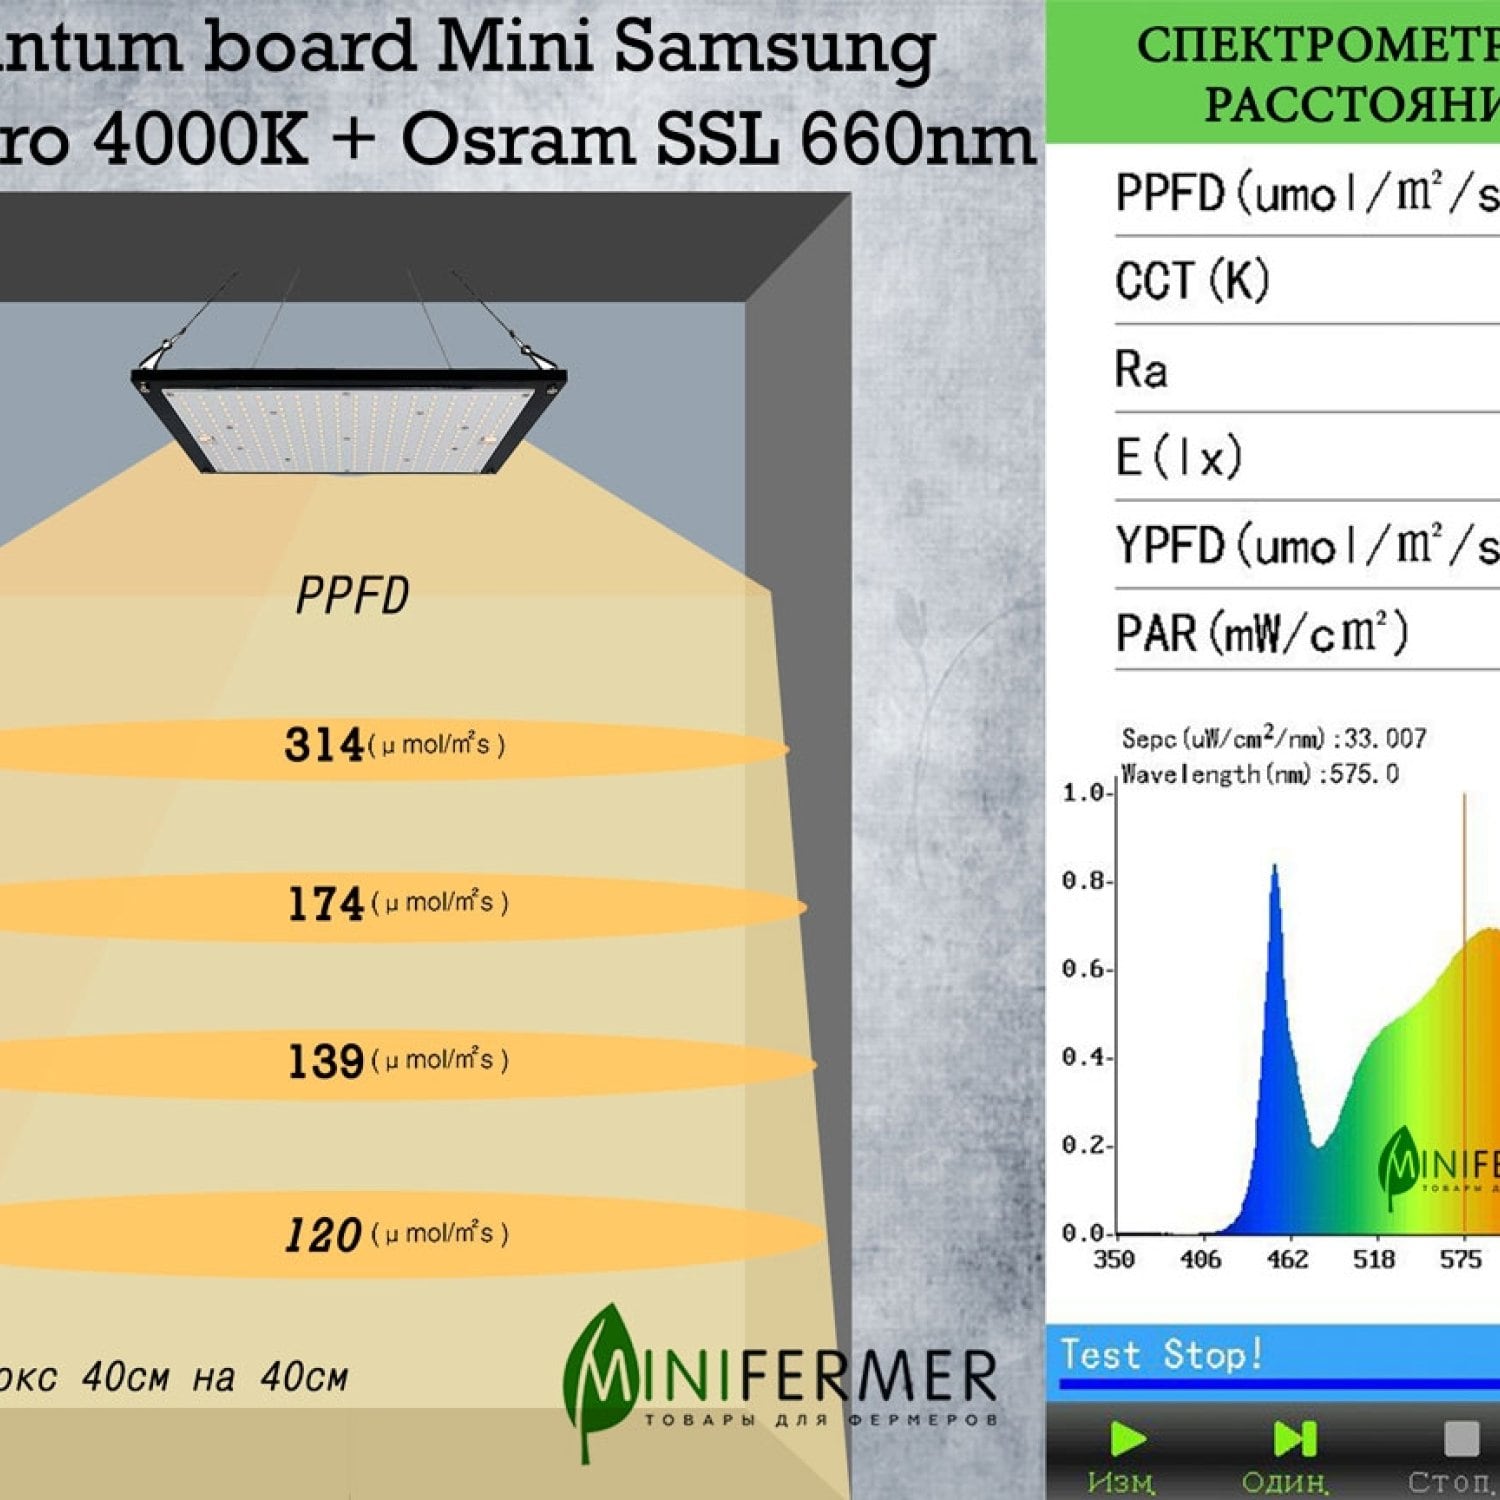 3.4 Quantum board Mini Samsung lm281b+pro 4000K + Osram SSL 660nm